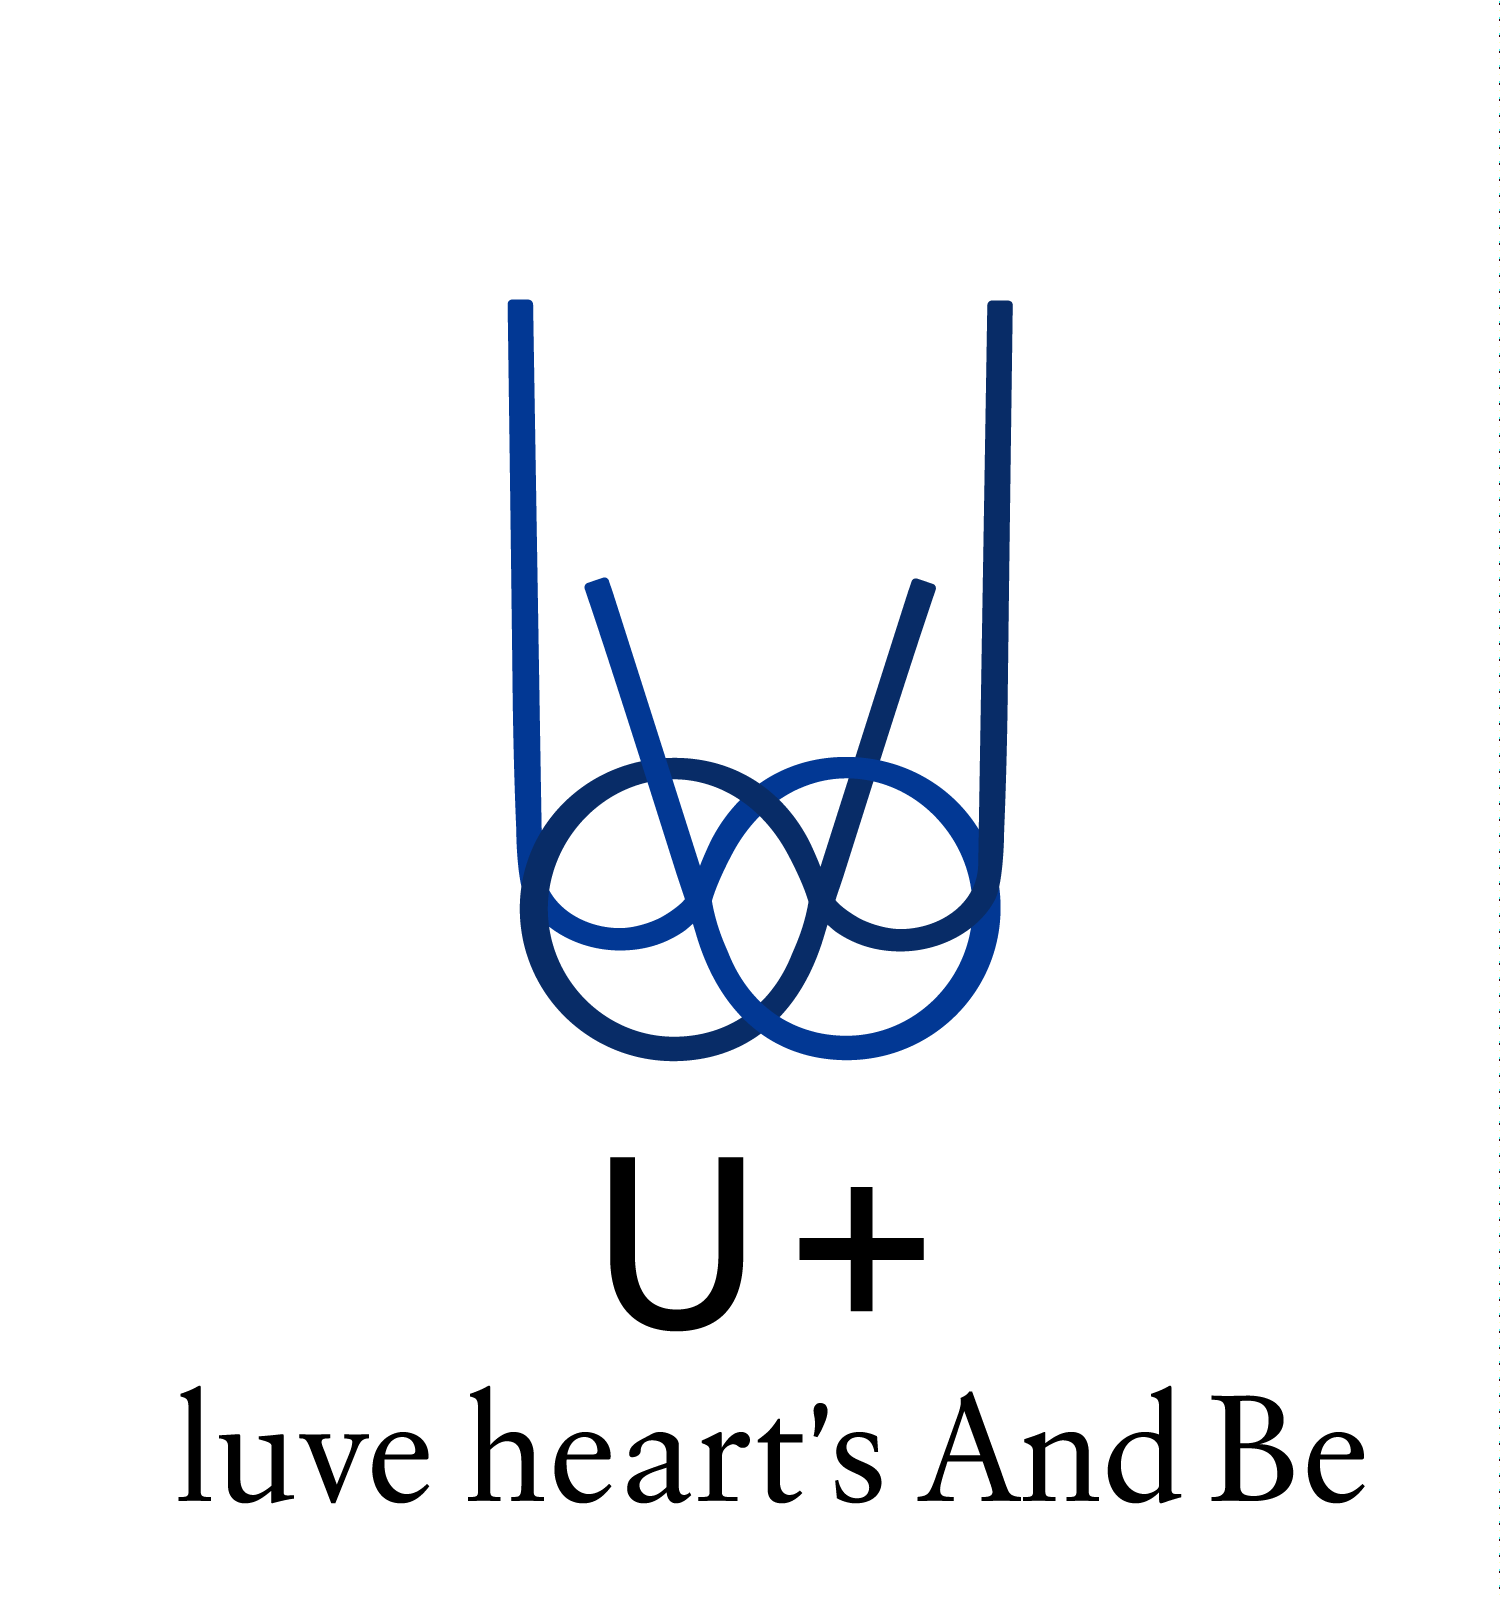 Link U Logo - U+logo-n – U + luve heart's And Be